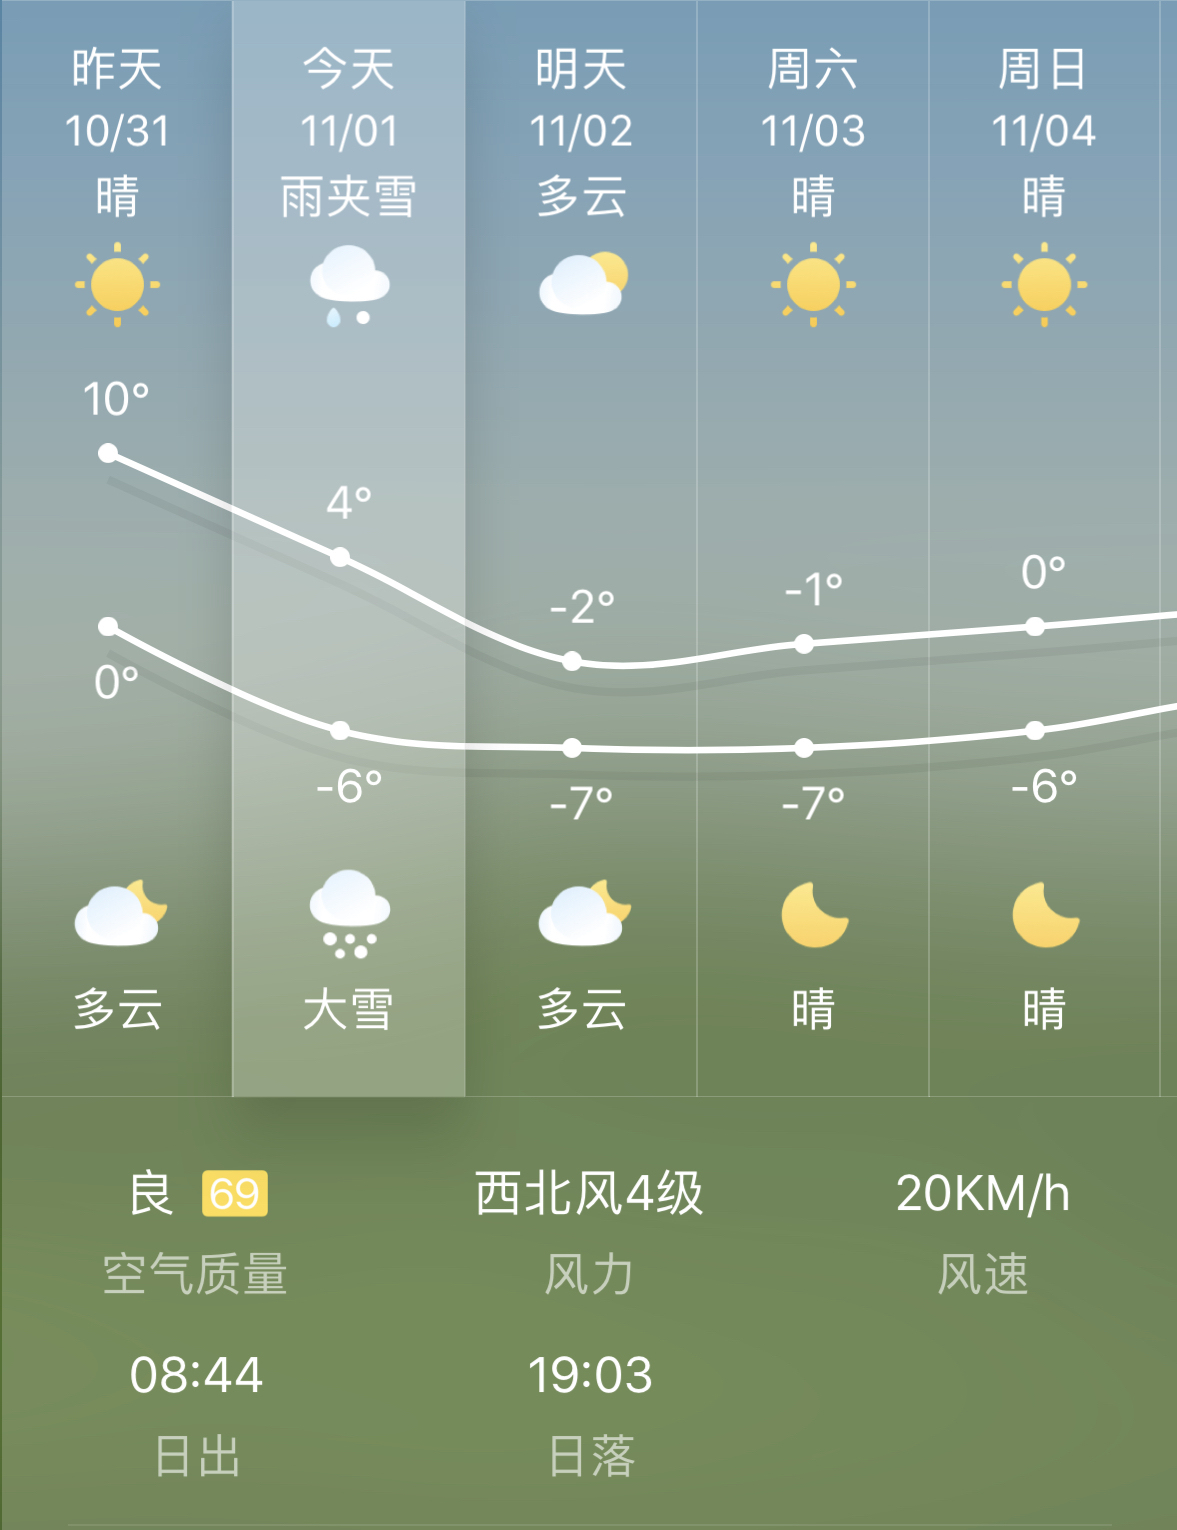 乌鲁木齐市气温图片